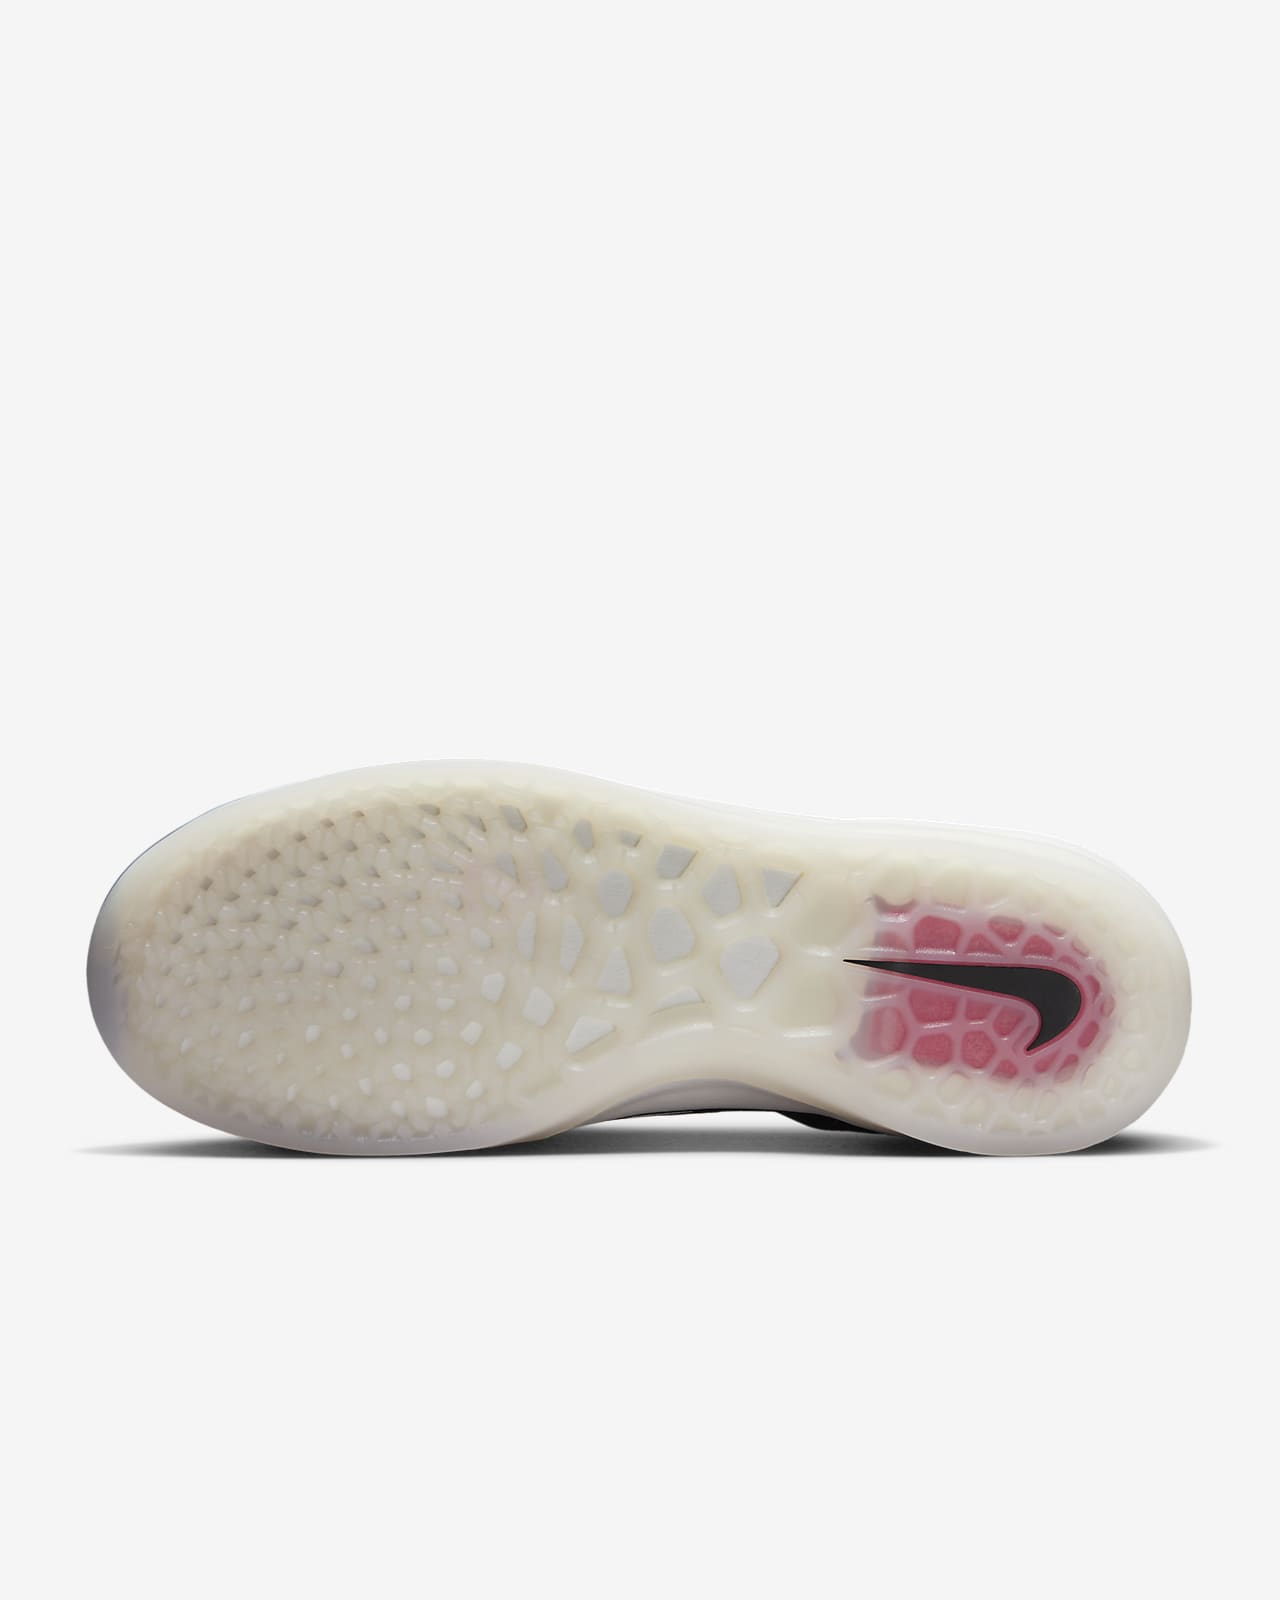 Nike SB Nyjah 3 Zapatillas de skateboard. ES